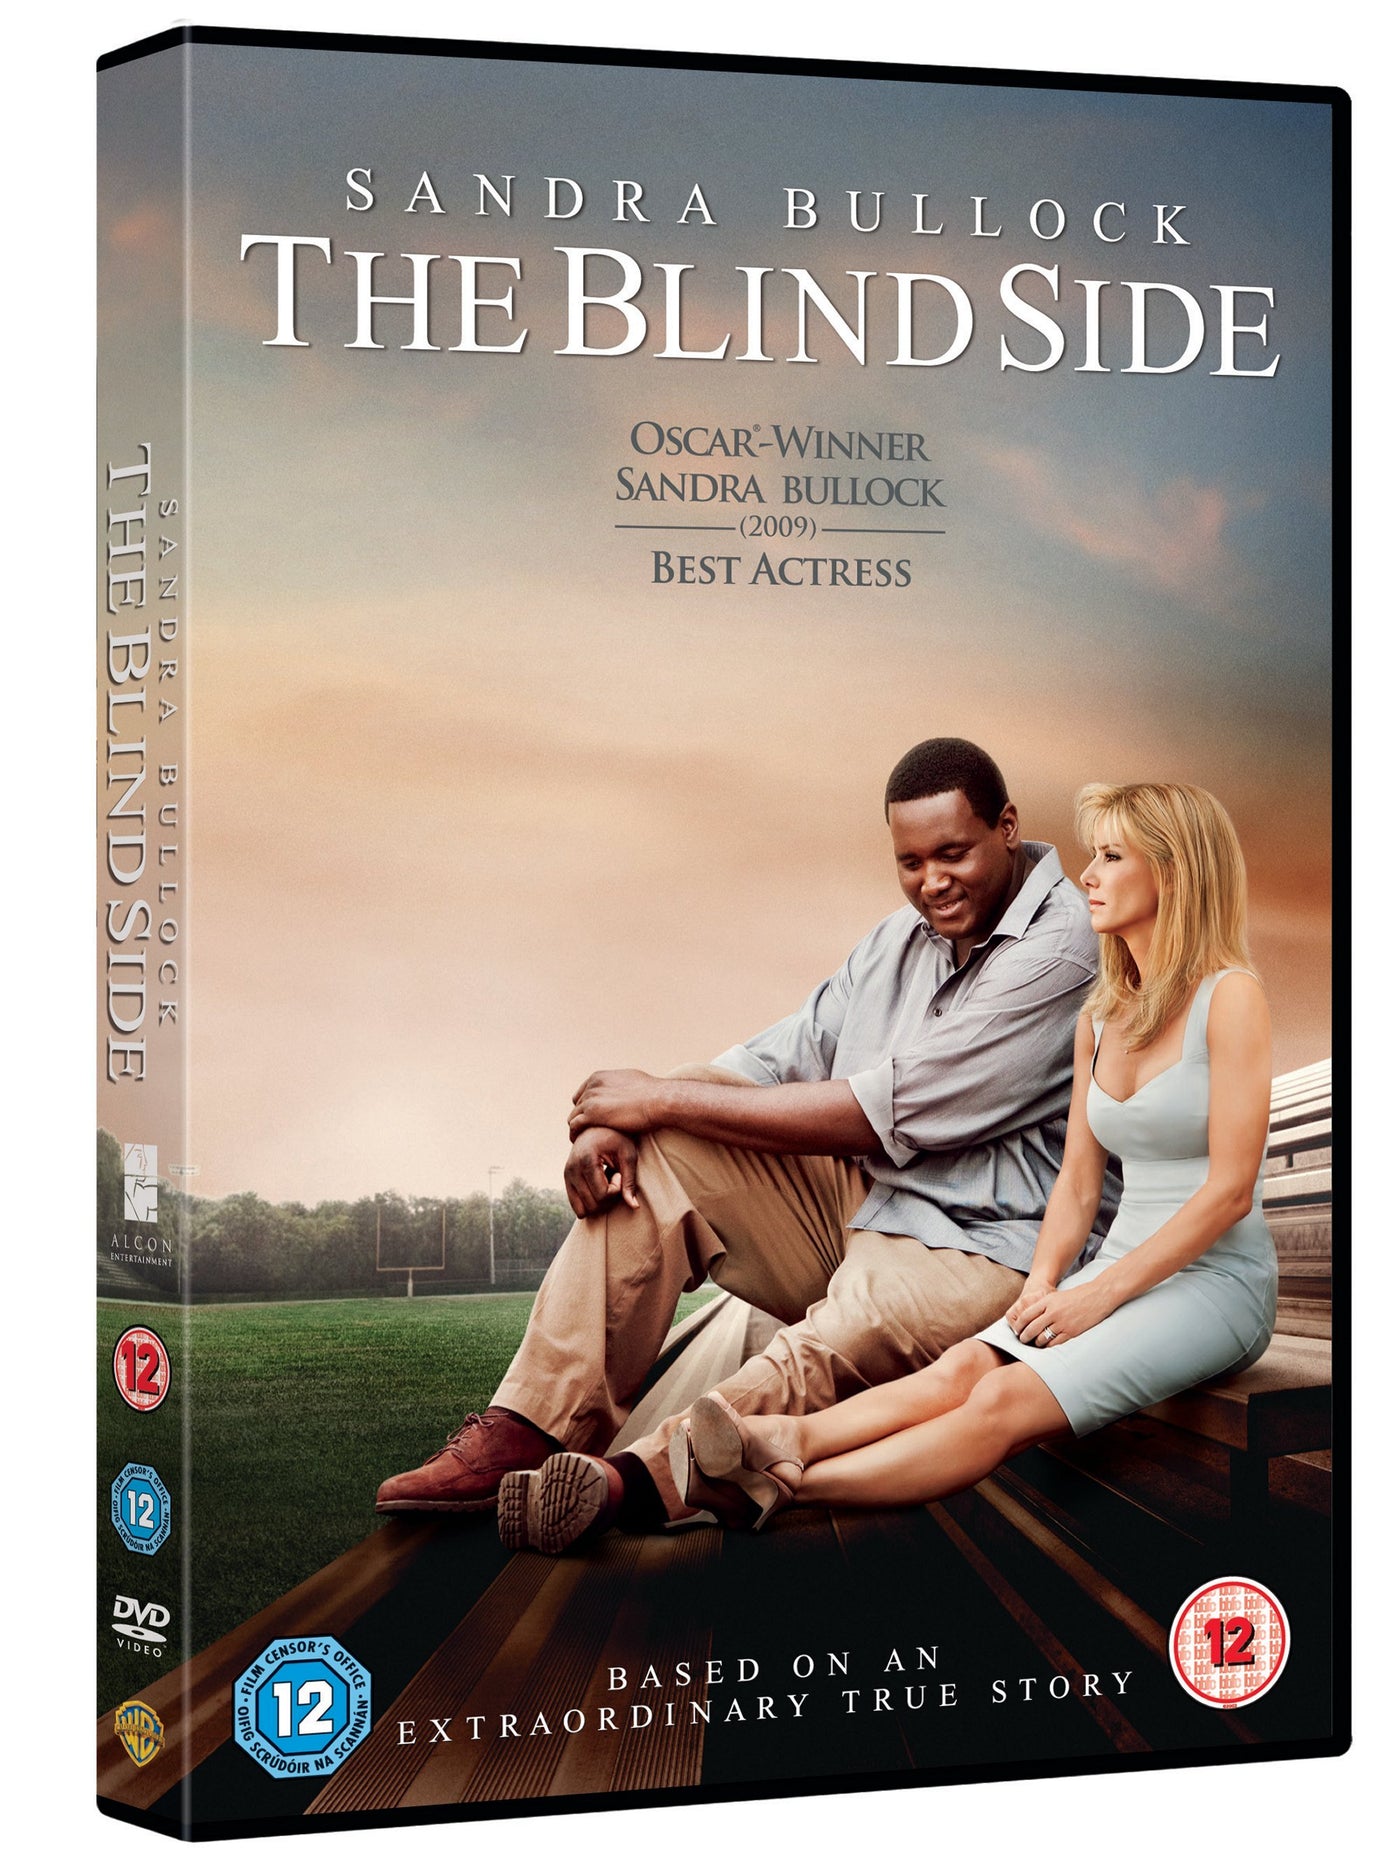 Blind Dating [DVD]